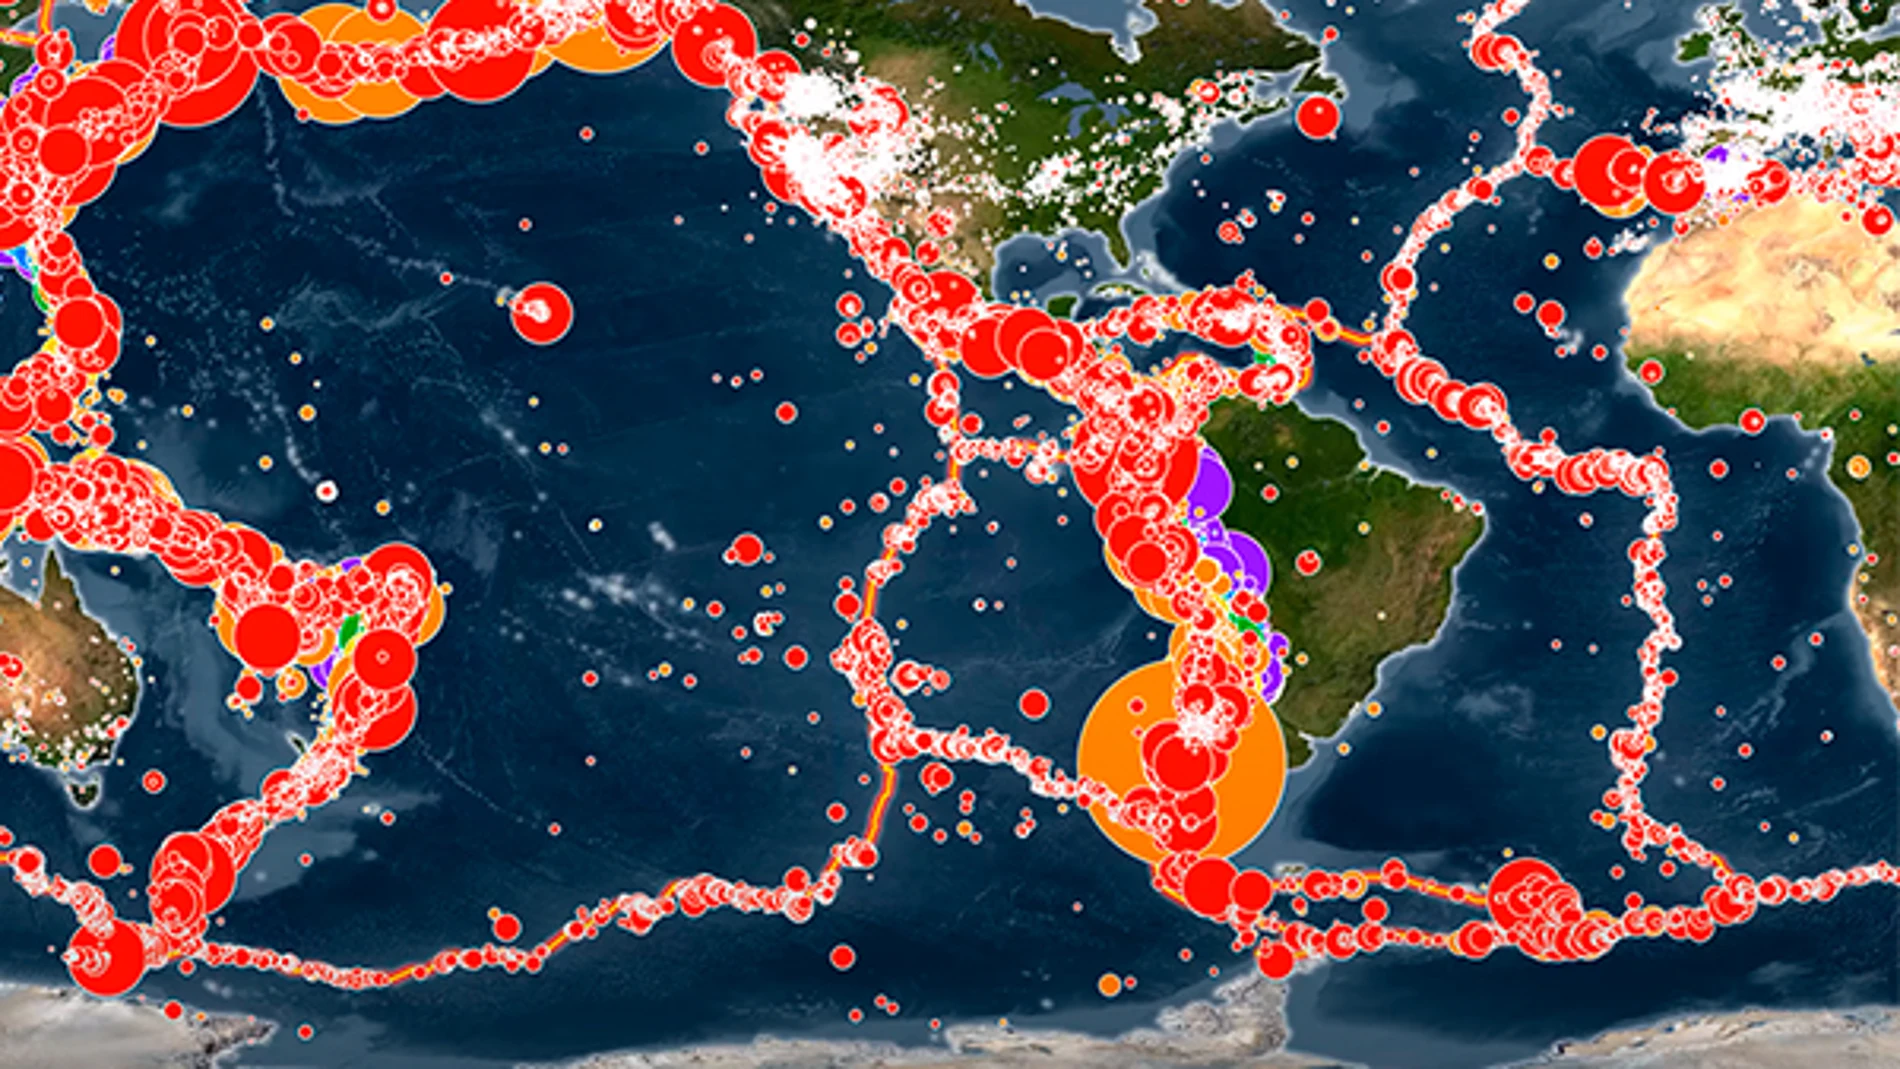 Detalle de la animación con todos los terremotos que se dieron en el siglo XX mostrados a la vez.